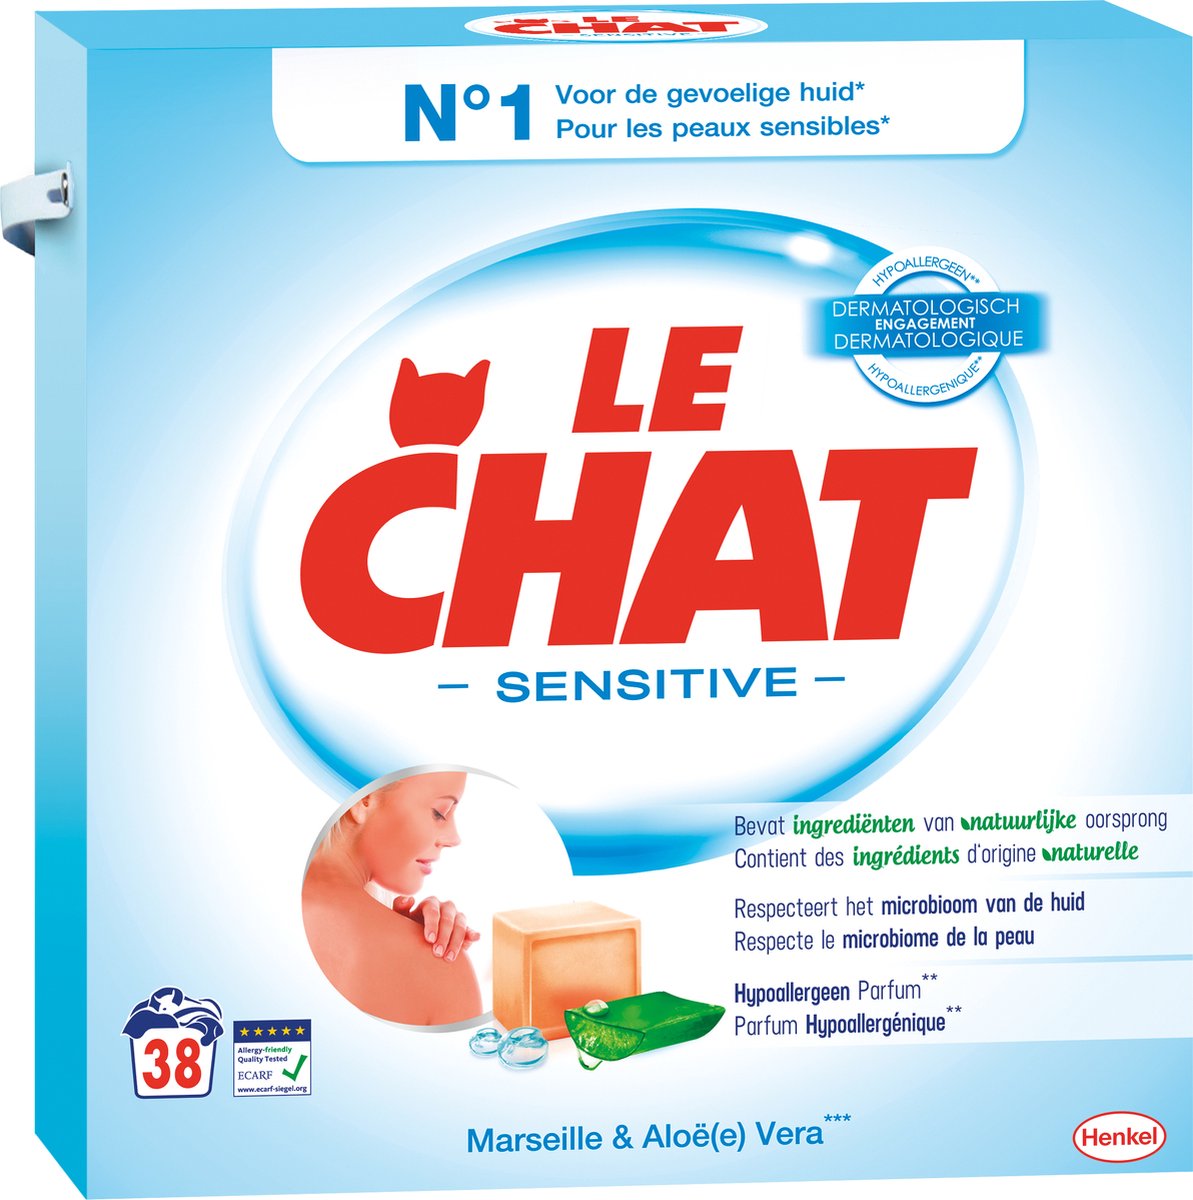 Lessive liquide Le Chat sensitive - Wibra Belgique - Vous faites ça bien.